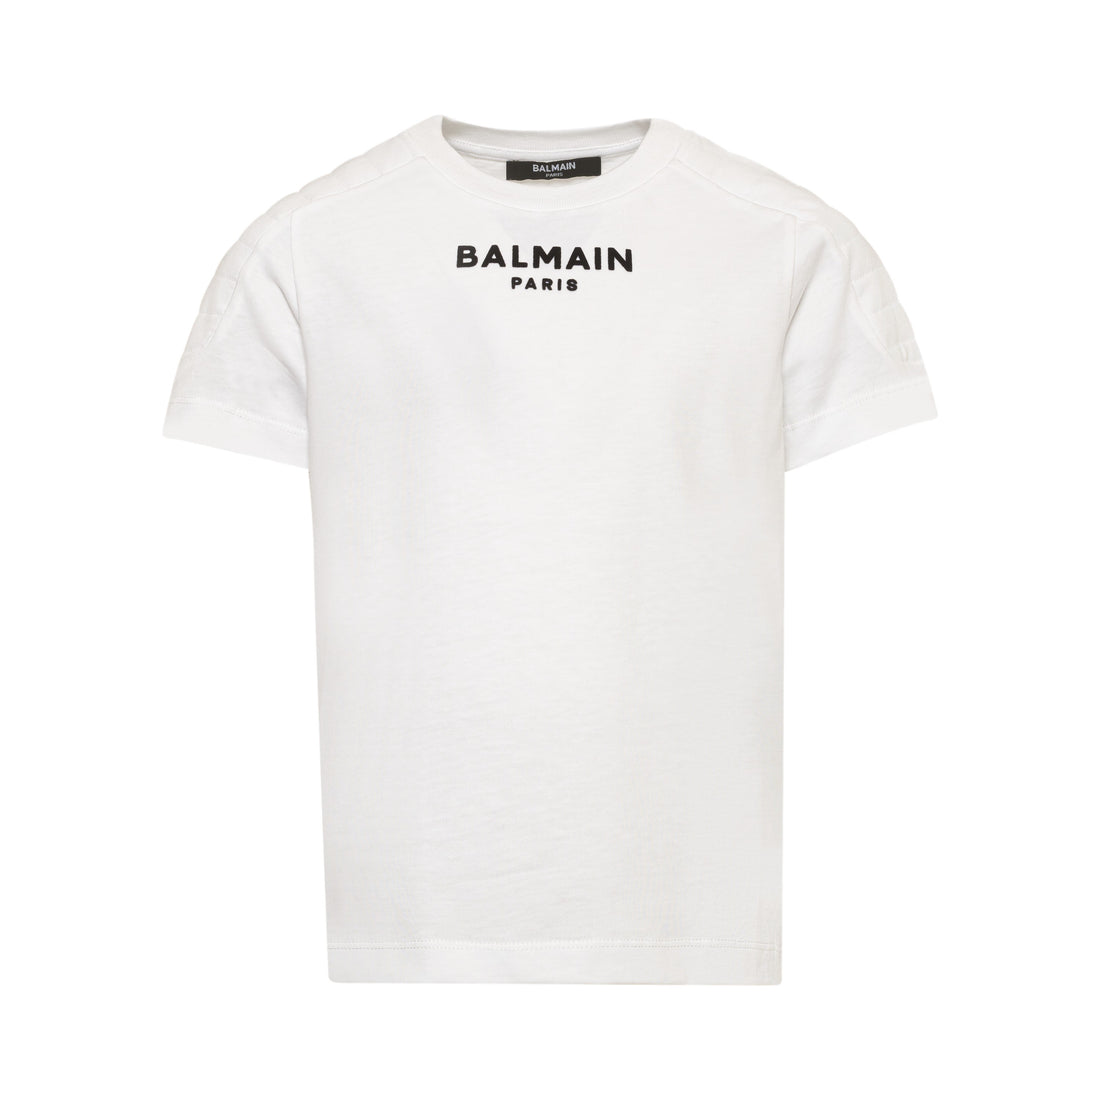 Balmain T-Shirt/Top